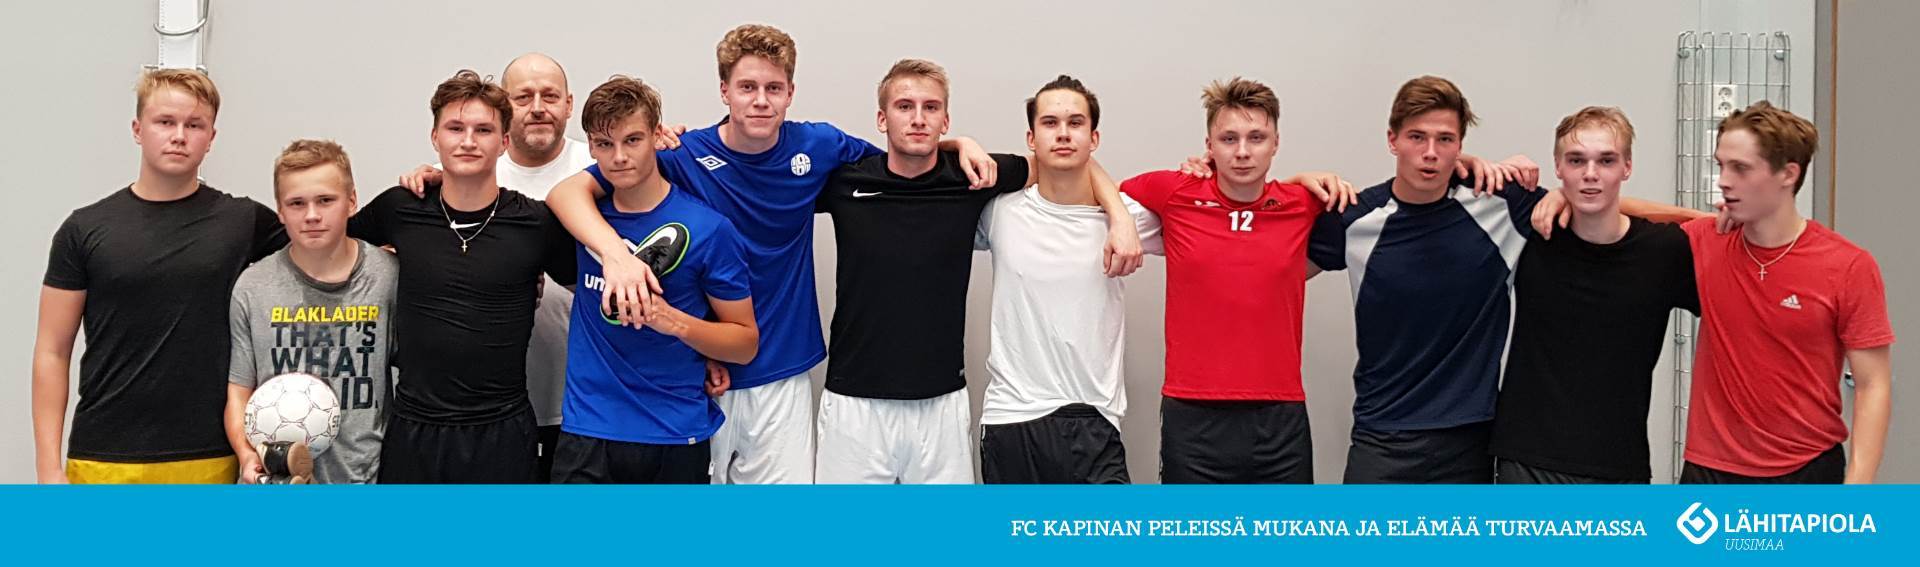 LähiTapiola Uusimaa mukaan U19 futsalpeleihin